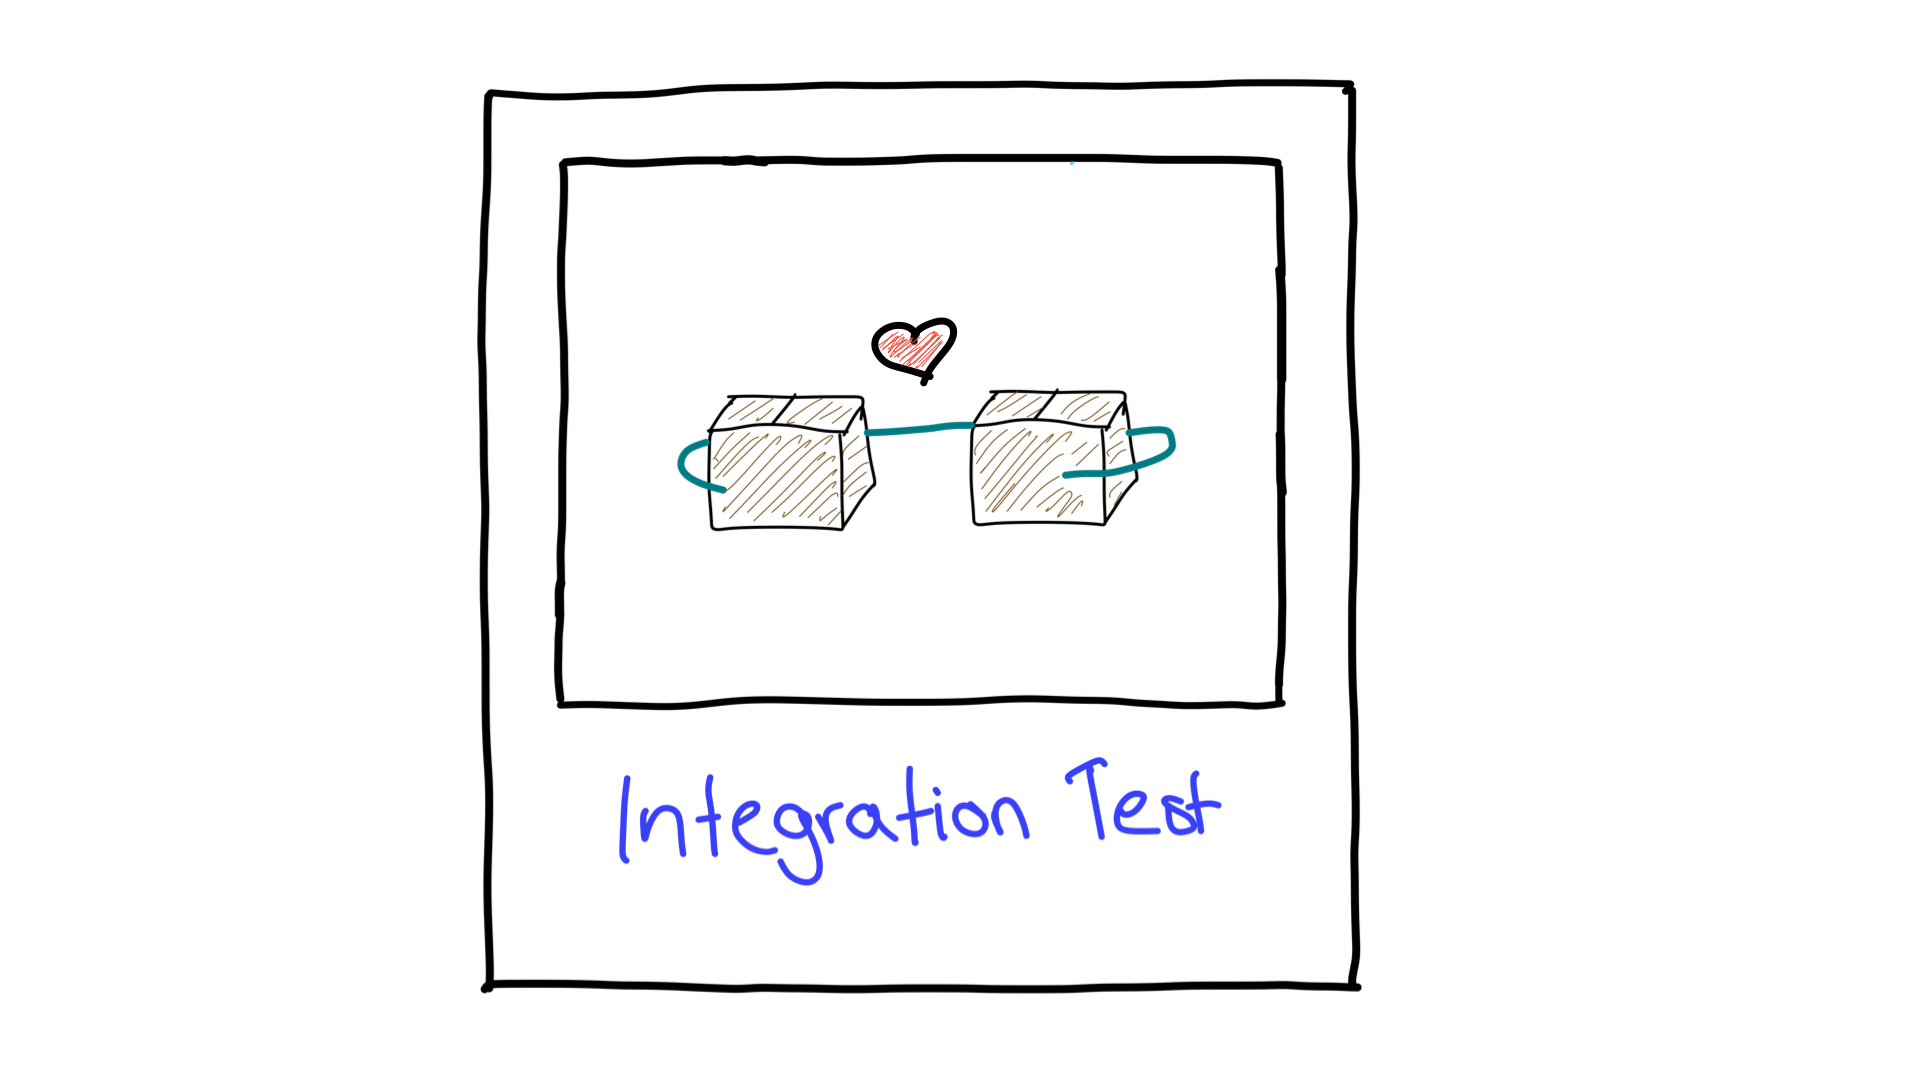 Uproszczony obraz testowania integracji pokazujący, jak działają ze sobą 2 jednostki.